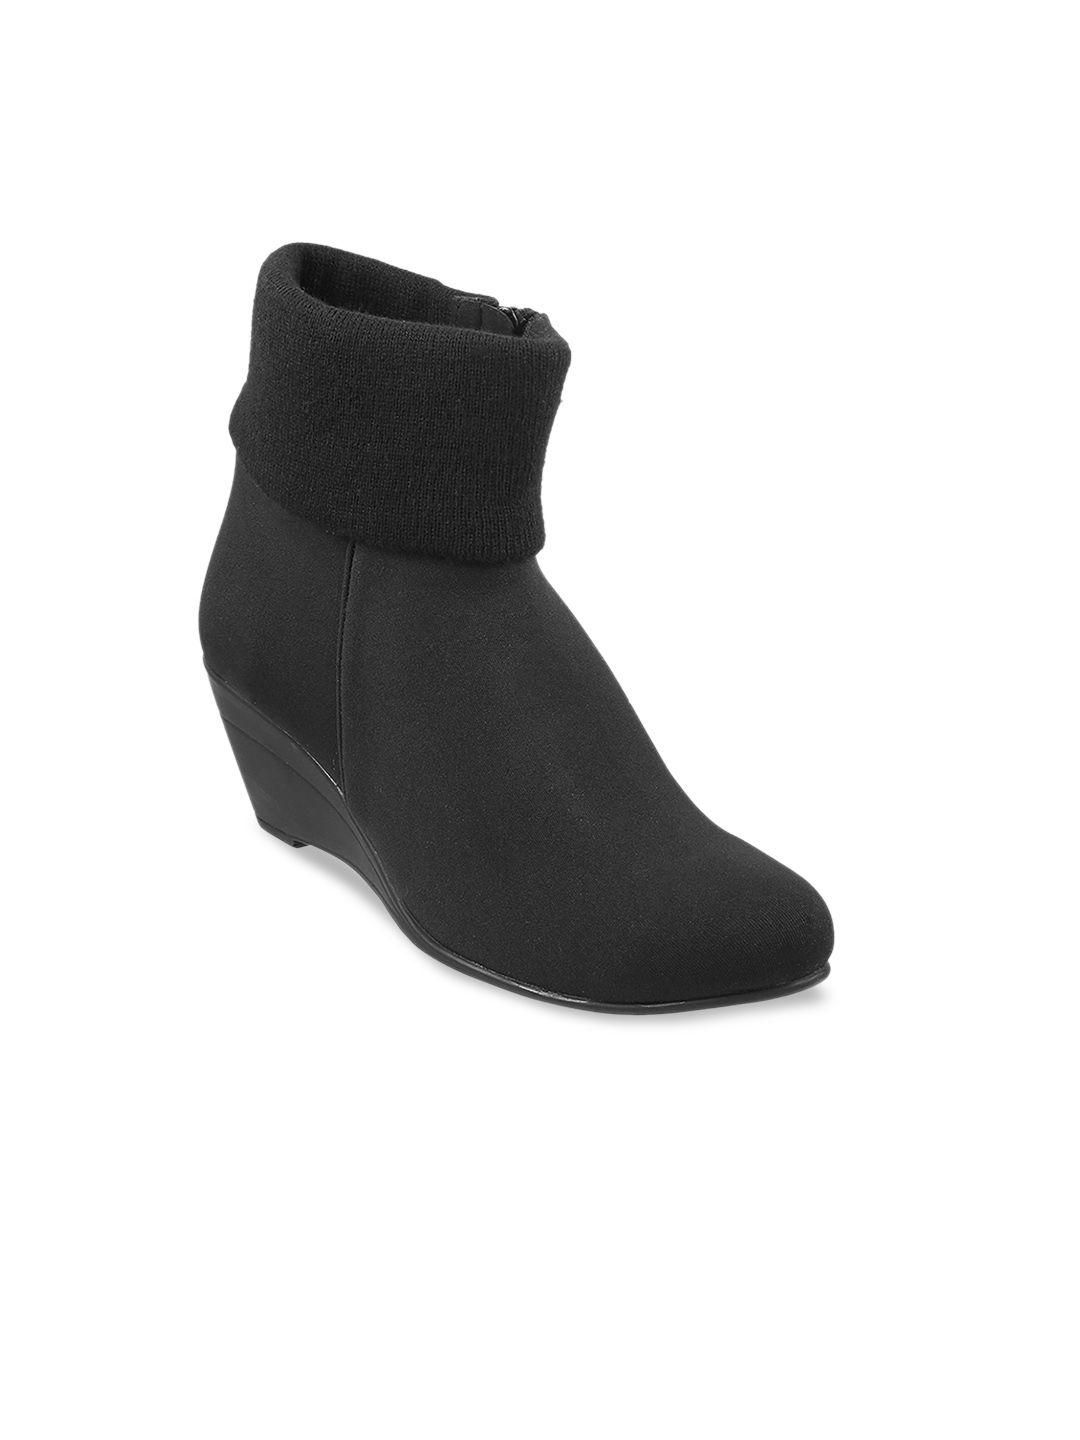 mochi-women-high-top-wedge-heel-boots